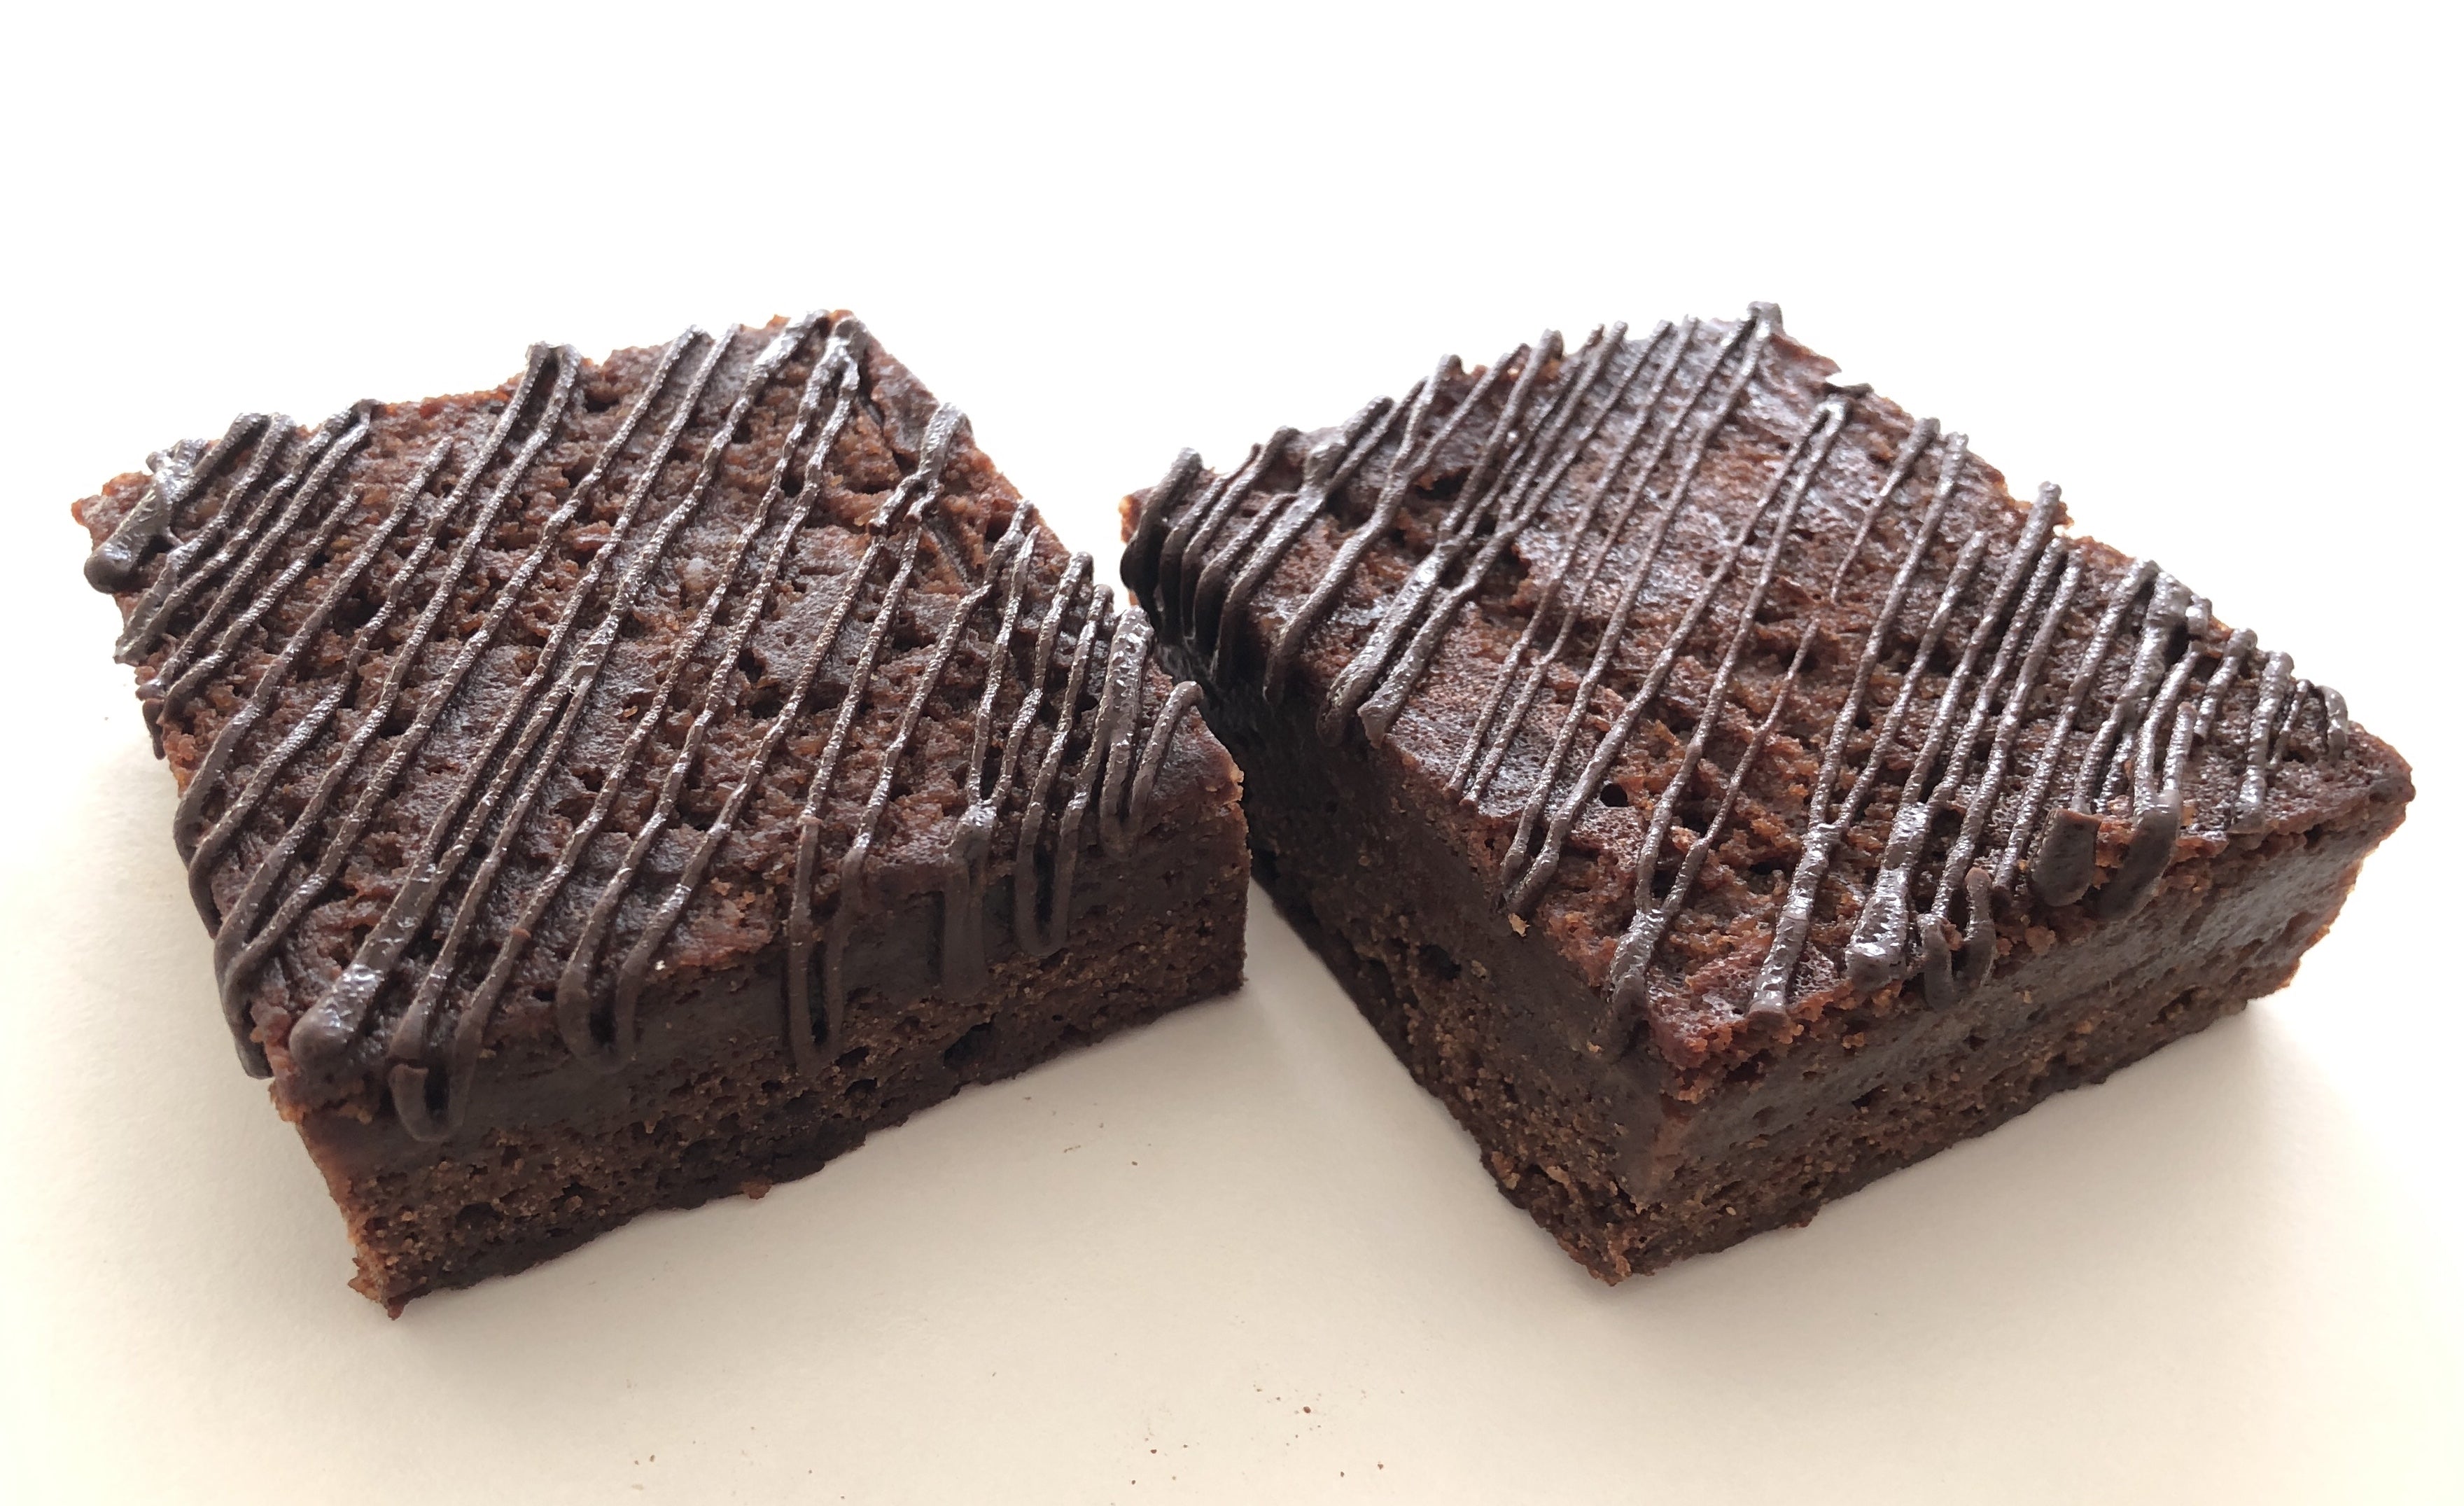 SKINNY GENIE Salted Caramel Chocolate Brownies, 80g